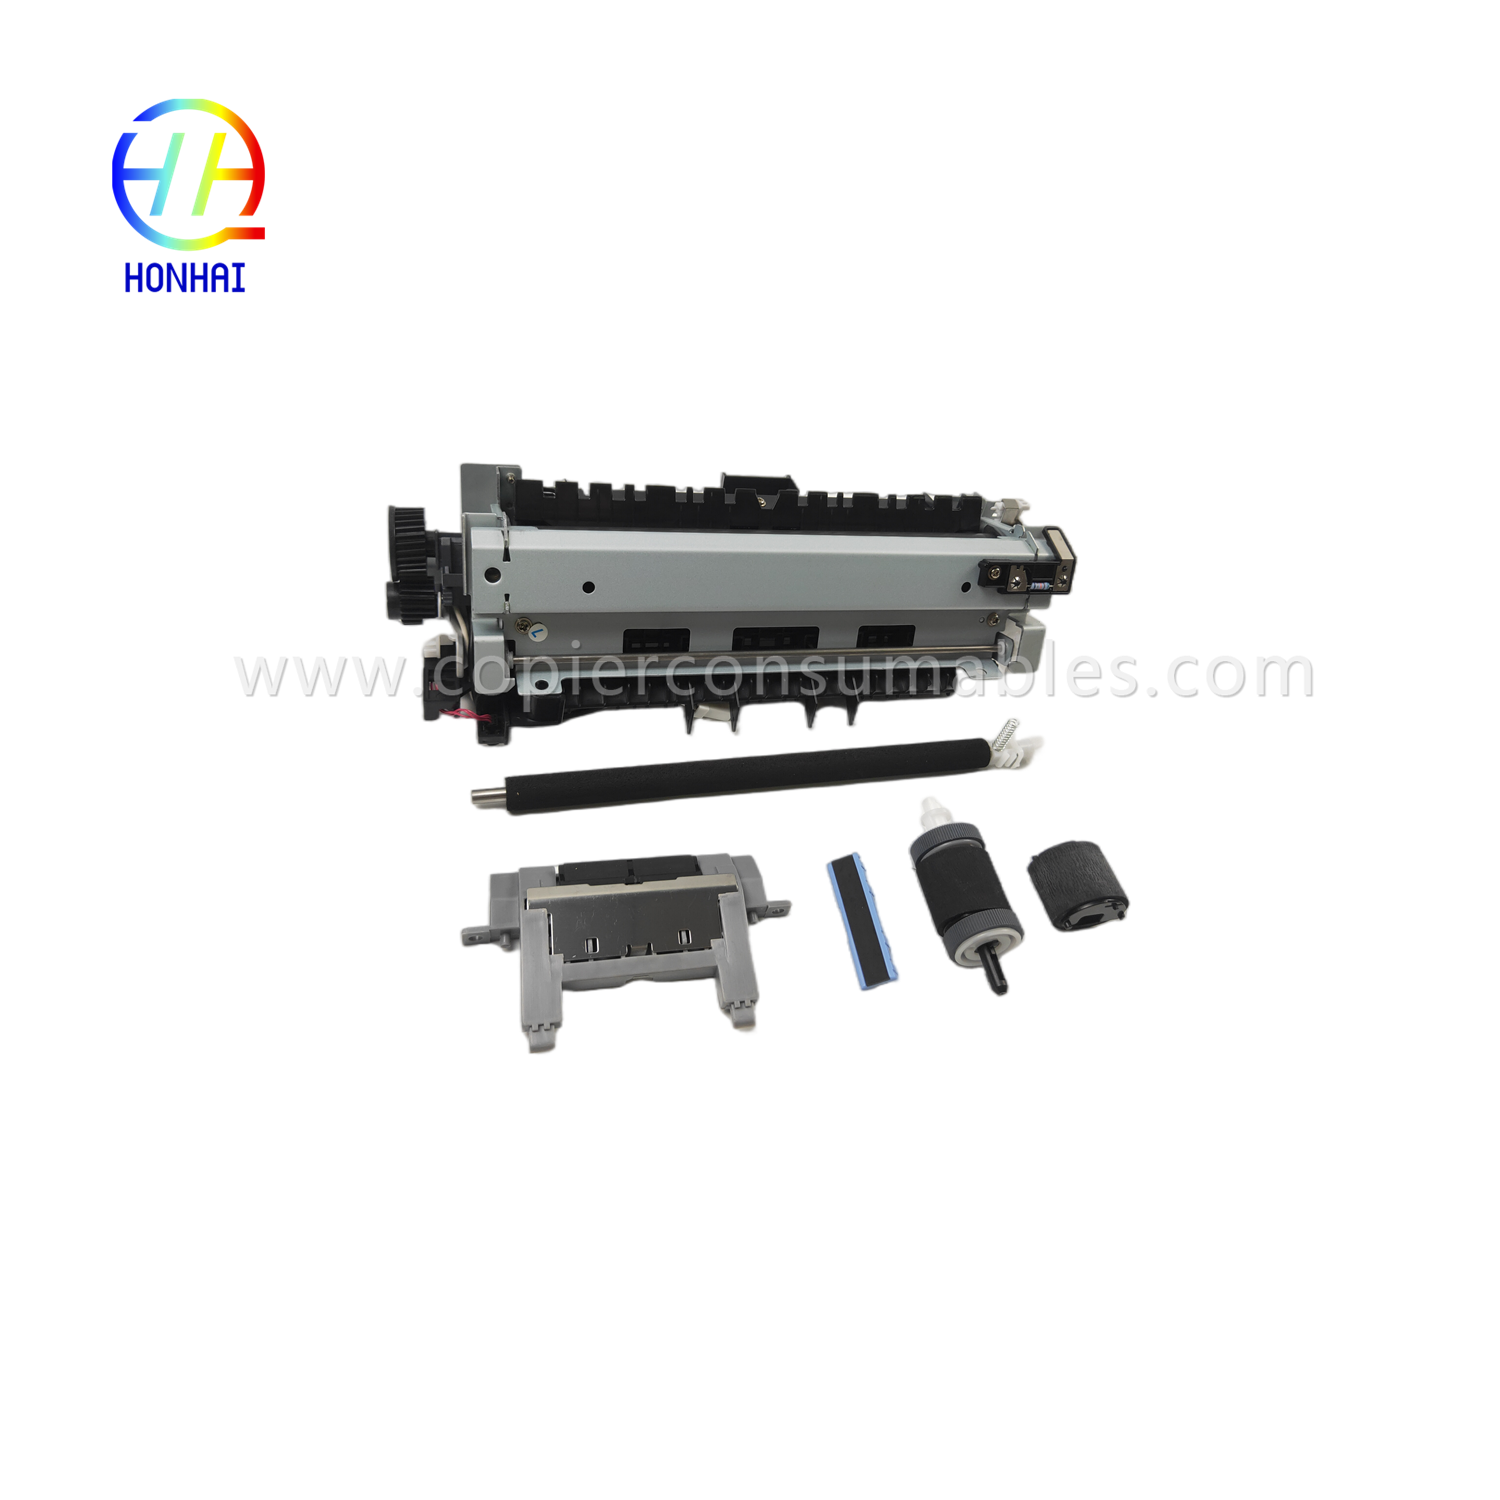 https://c585.goodao.net/maintenance-kit-220v-japan-for-hp-cf116-67903-laserjet-enterprise-500-mfp-m525-flow-mfp-m525c-pro-mfp-m521-includes fuser-transfer-roller-tray-1-separation-pad-tray-2-roller-tray-2-separation-pad-product/